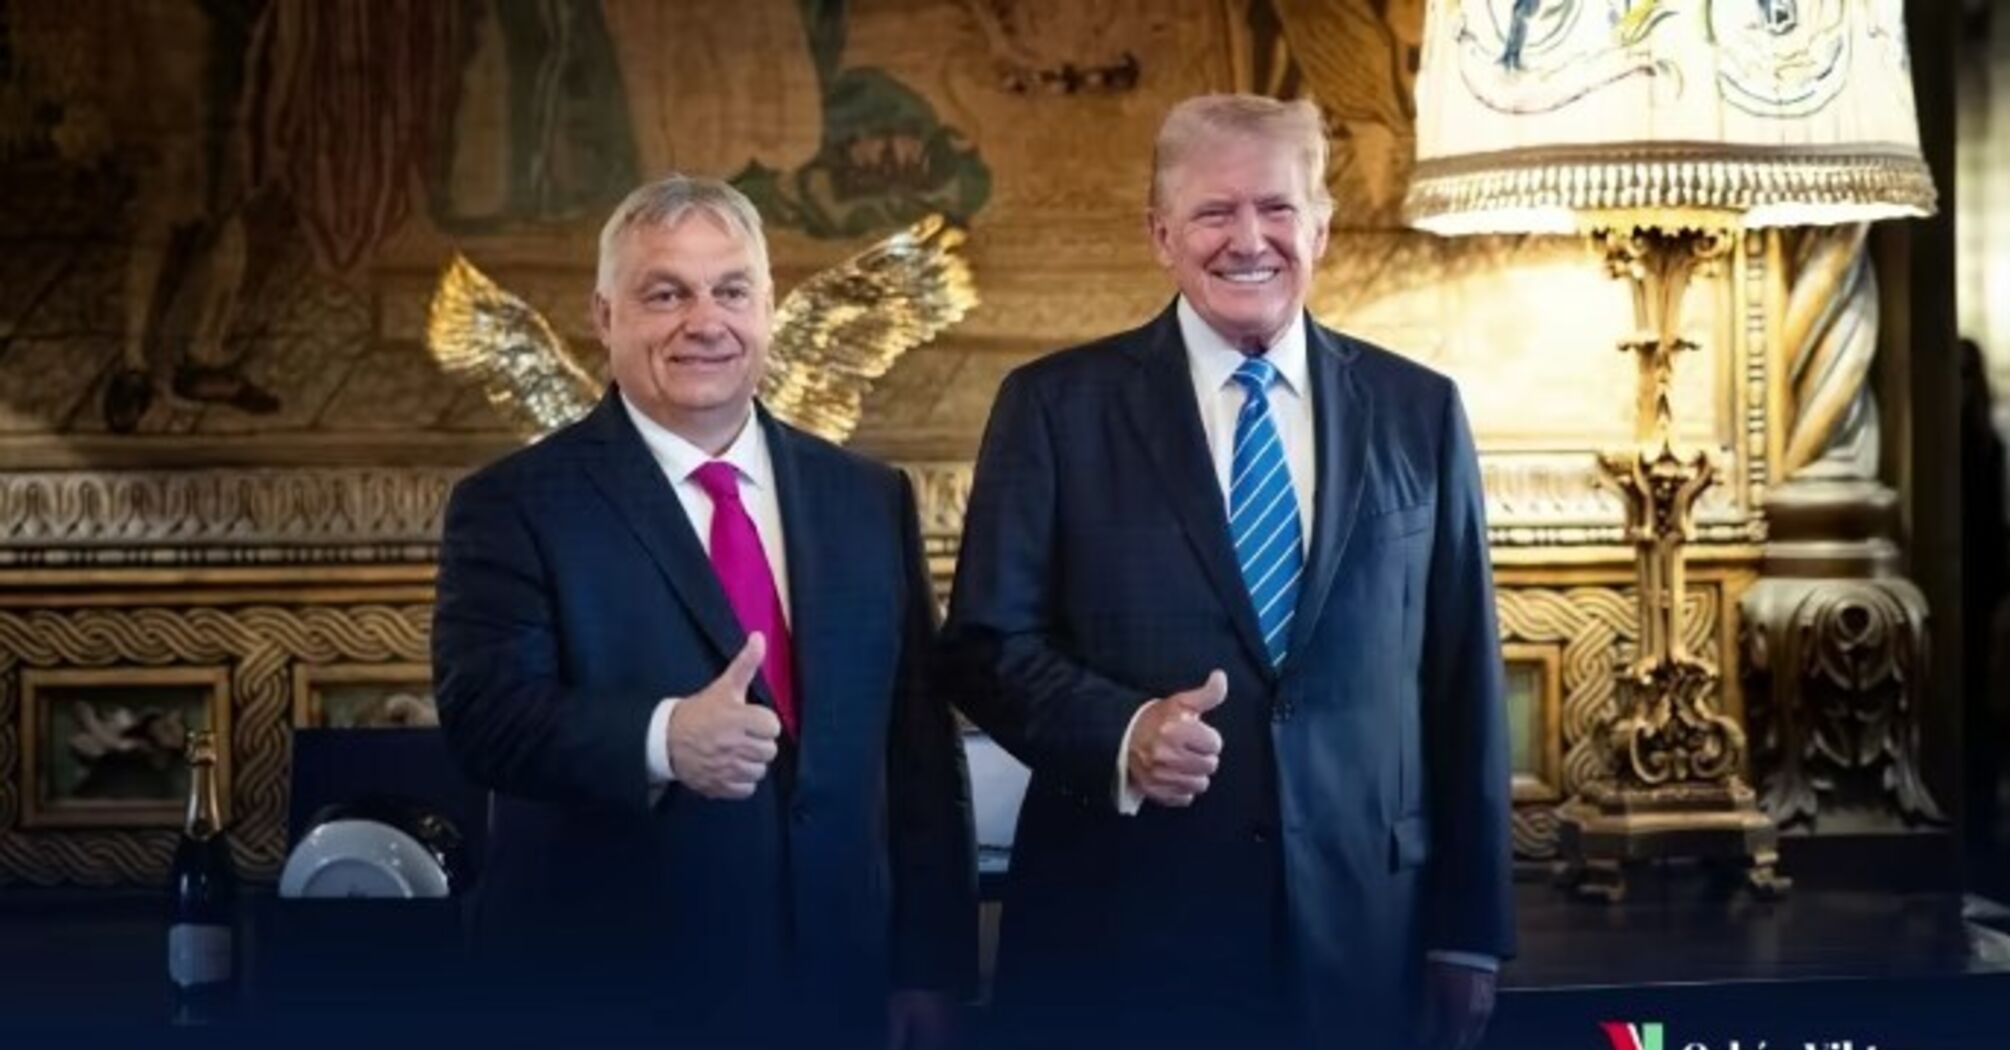 Трамп та Орбан збираються здати Україну та світопорядок із потрухами